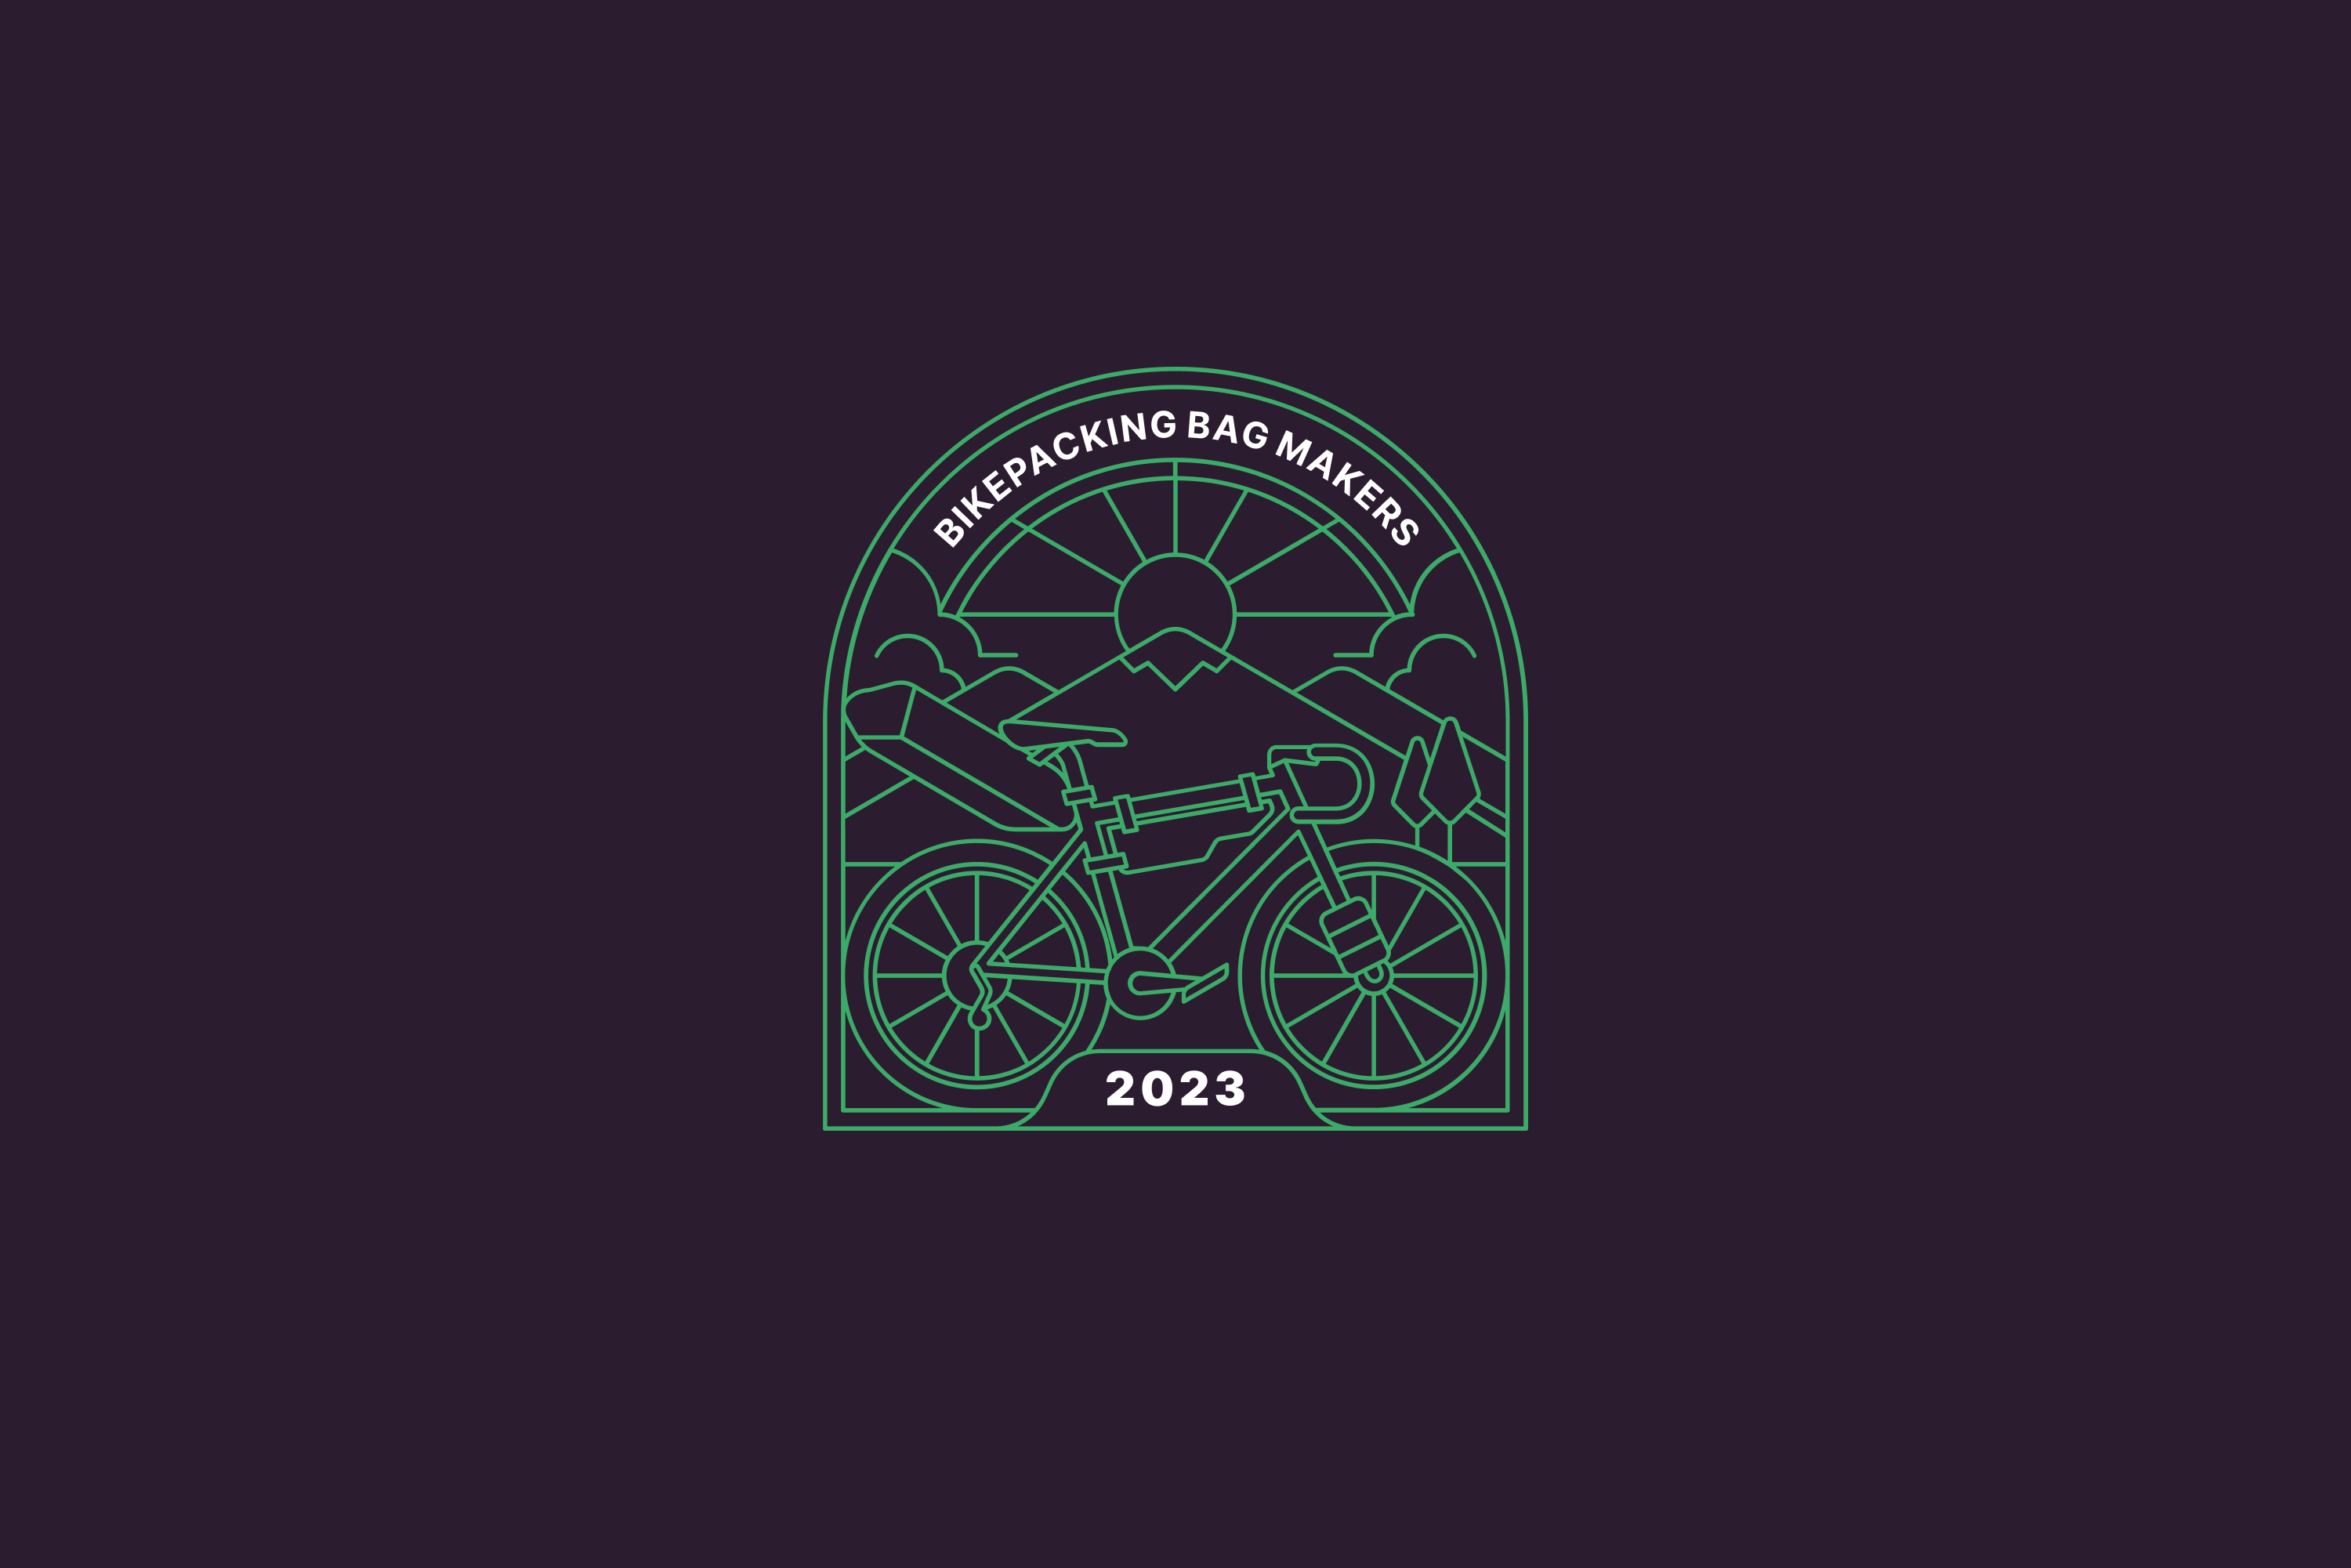 28 Bikepacking Bag Brands For 2023